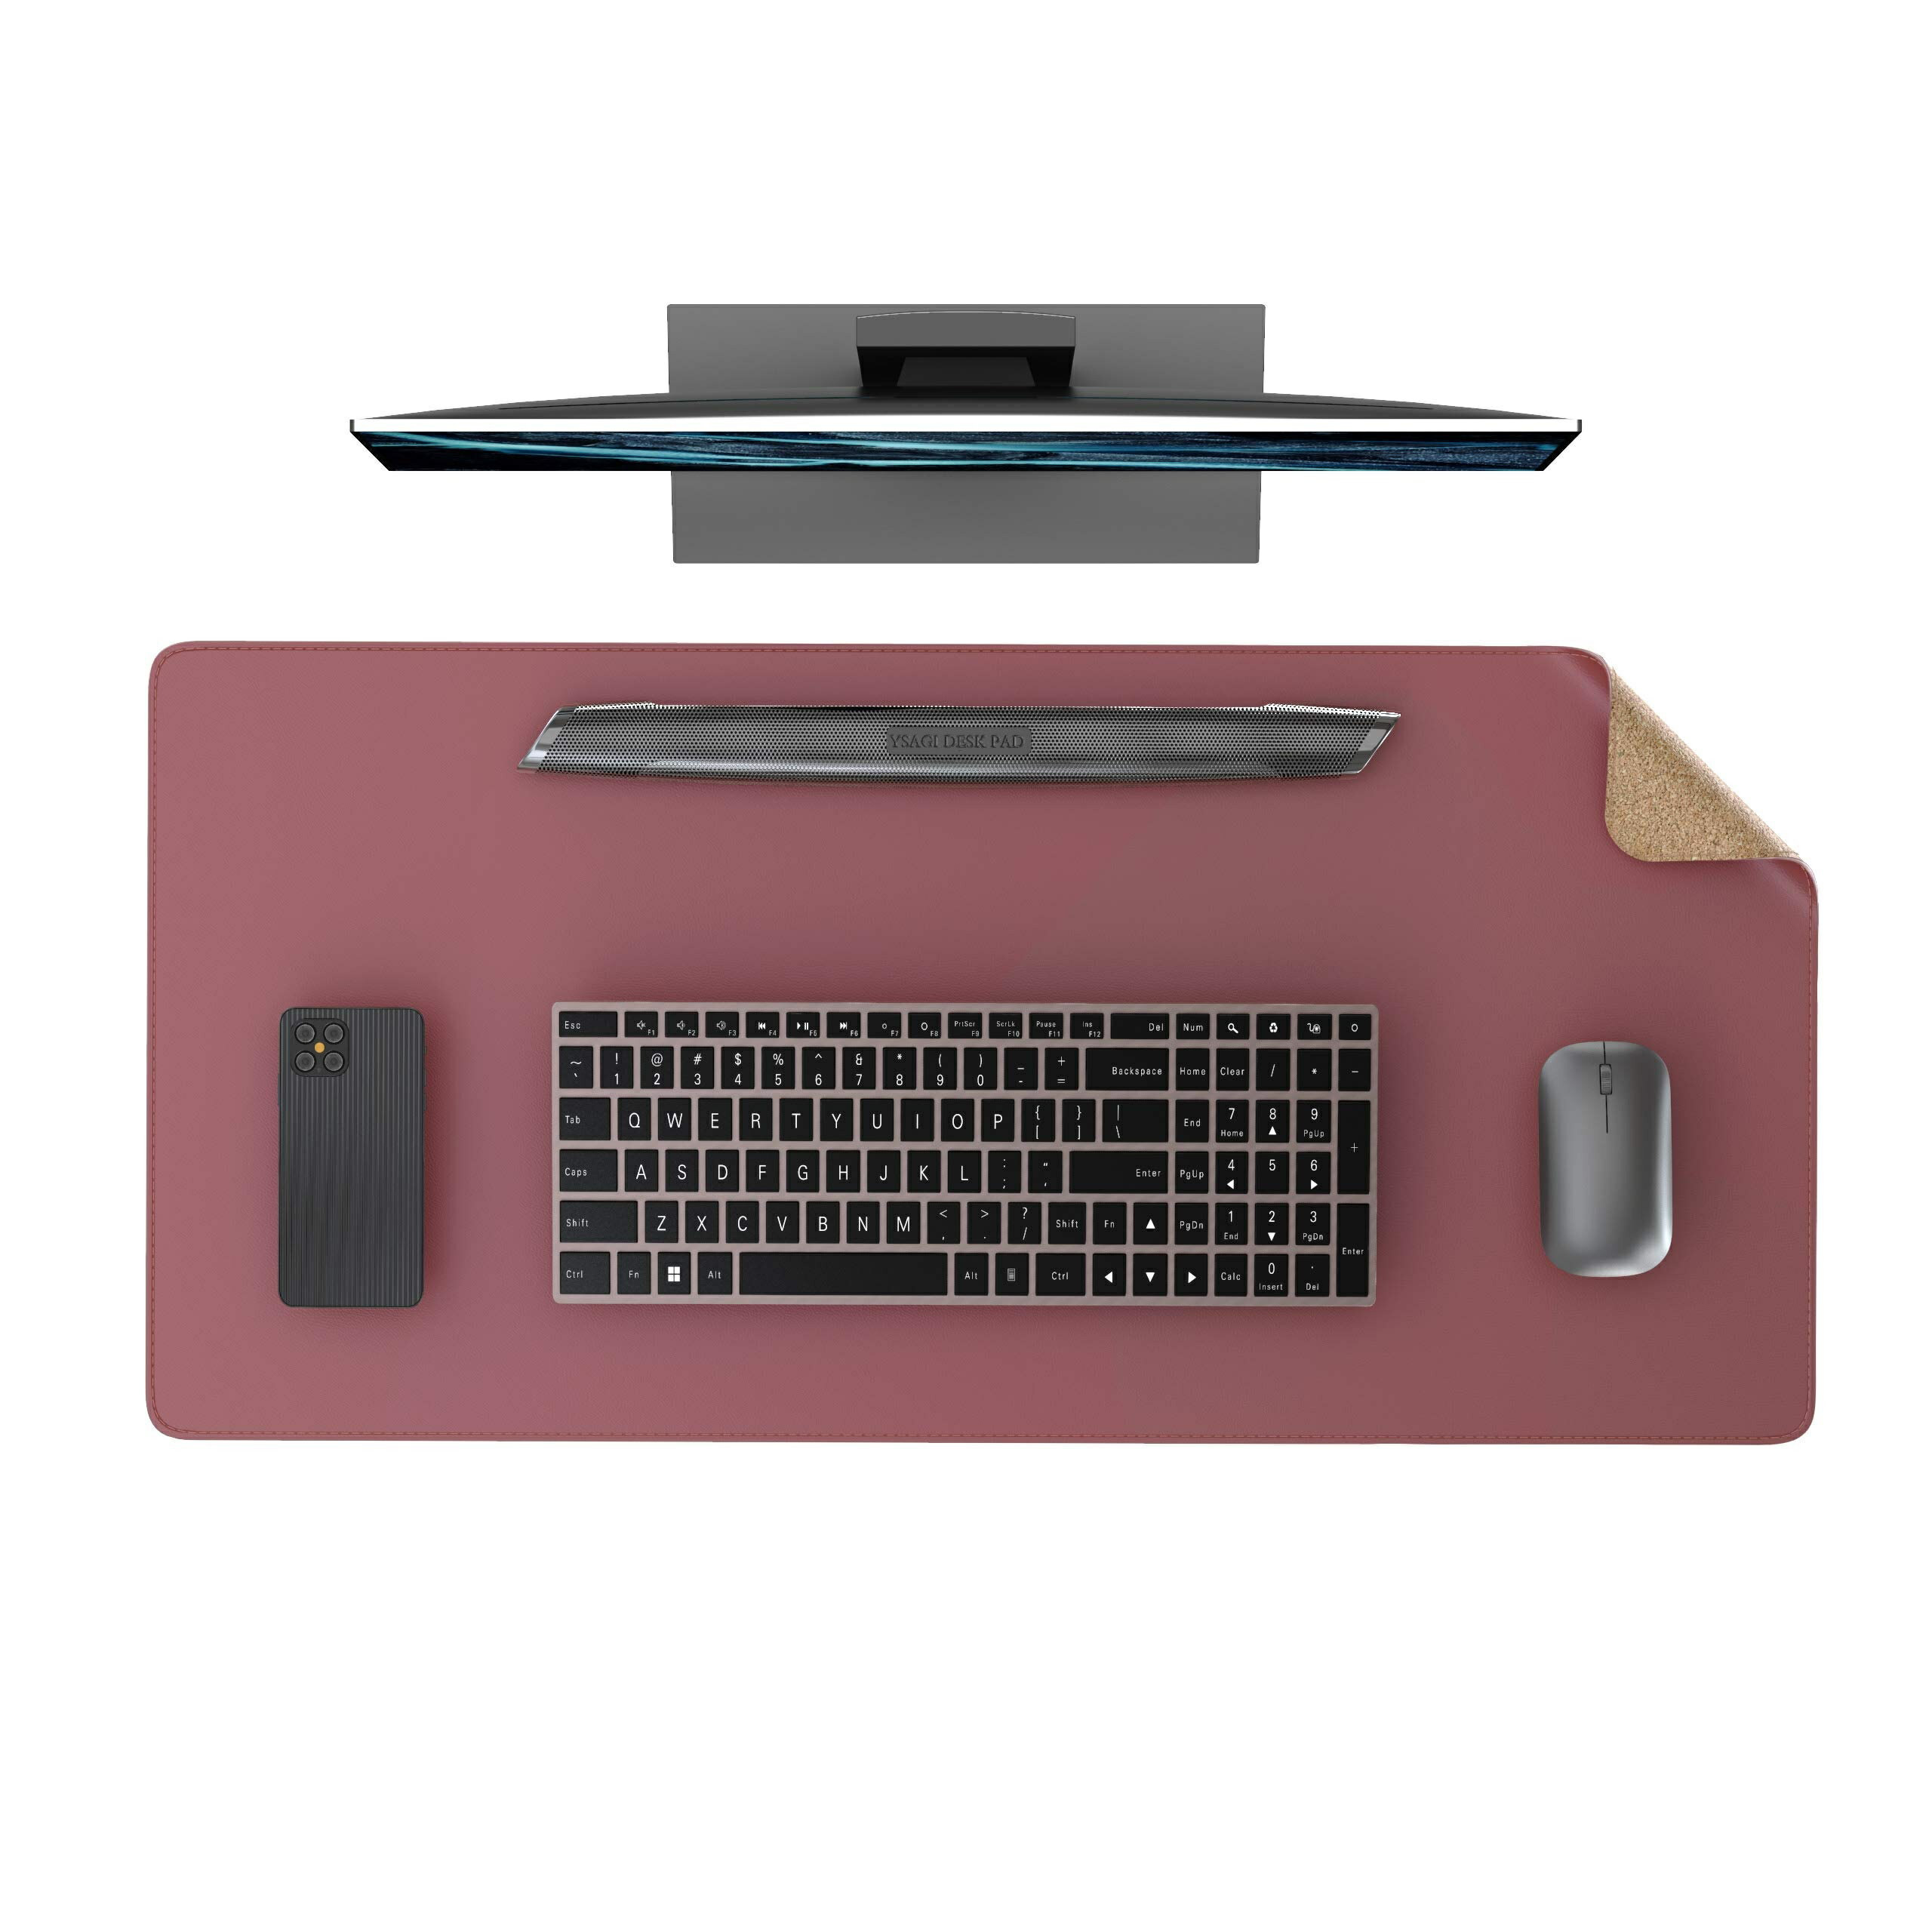 デスクマット 天然コルクデスクパット 環境に優しいパソコンマット ゲーミングマウスパッド オフィス及び自宅用テーブルマット